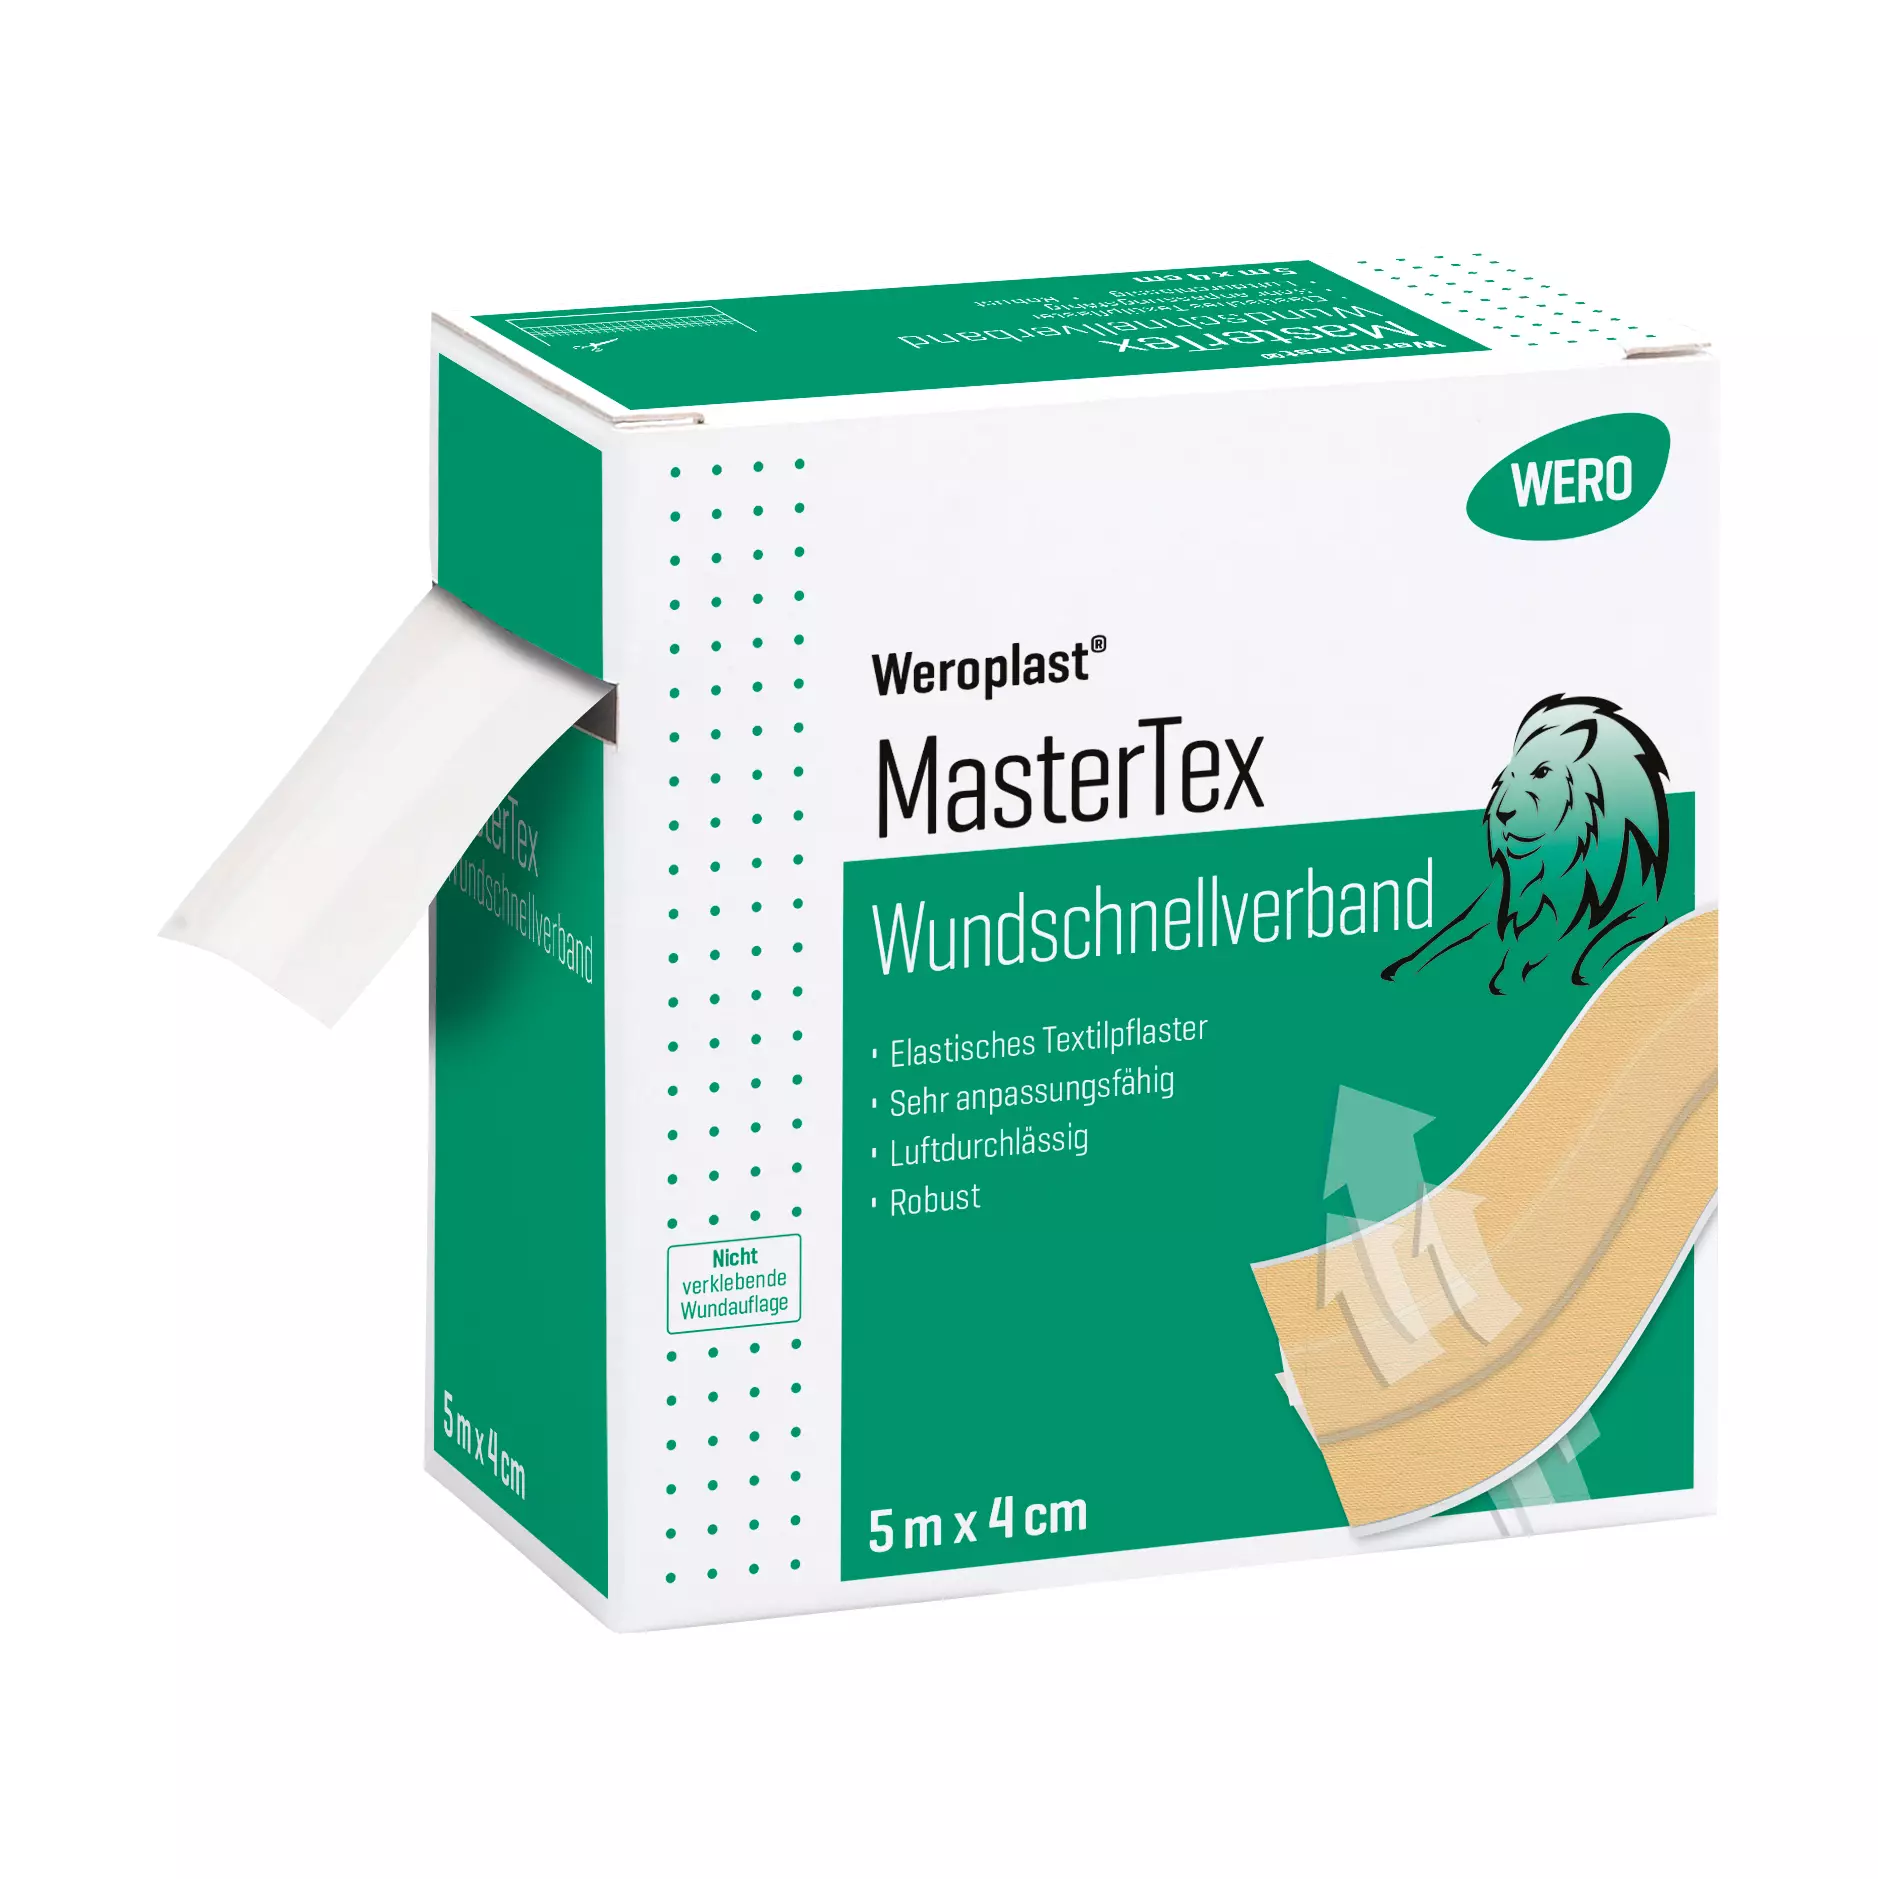 Wound dressing Weroplast® MasterTex - 4 cm, 5 m